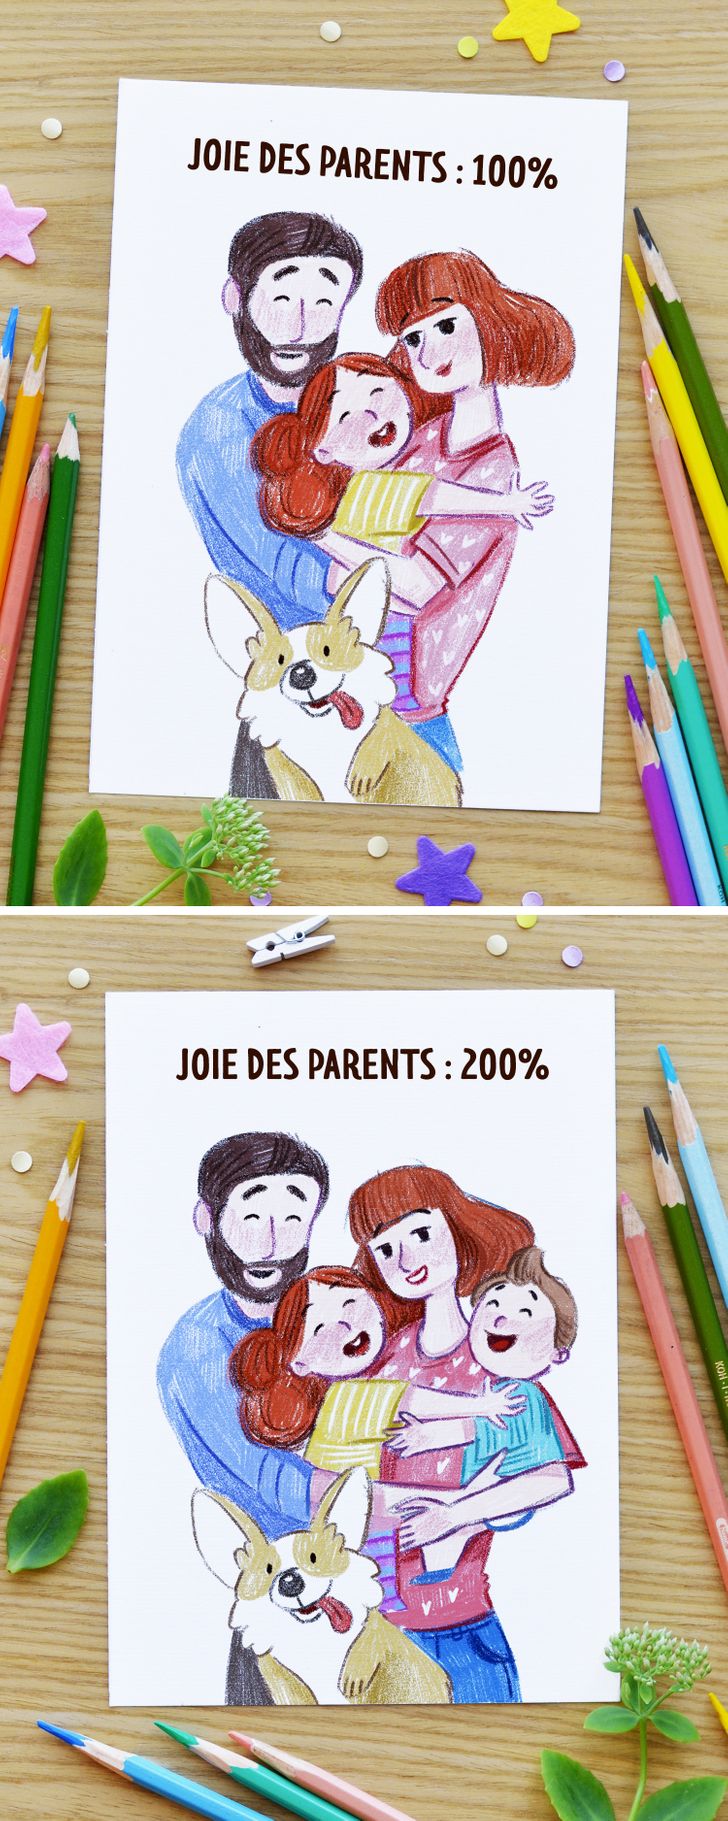 14 bandes dessinees qui illustrent honnetement la perception differente des parents entre leur premier et leur deuxieme enfant 13